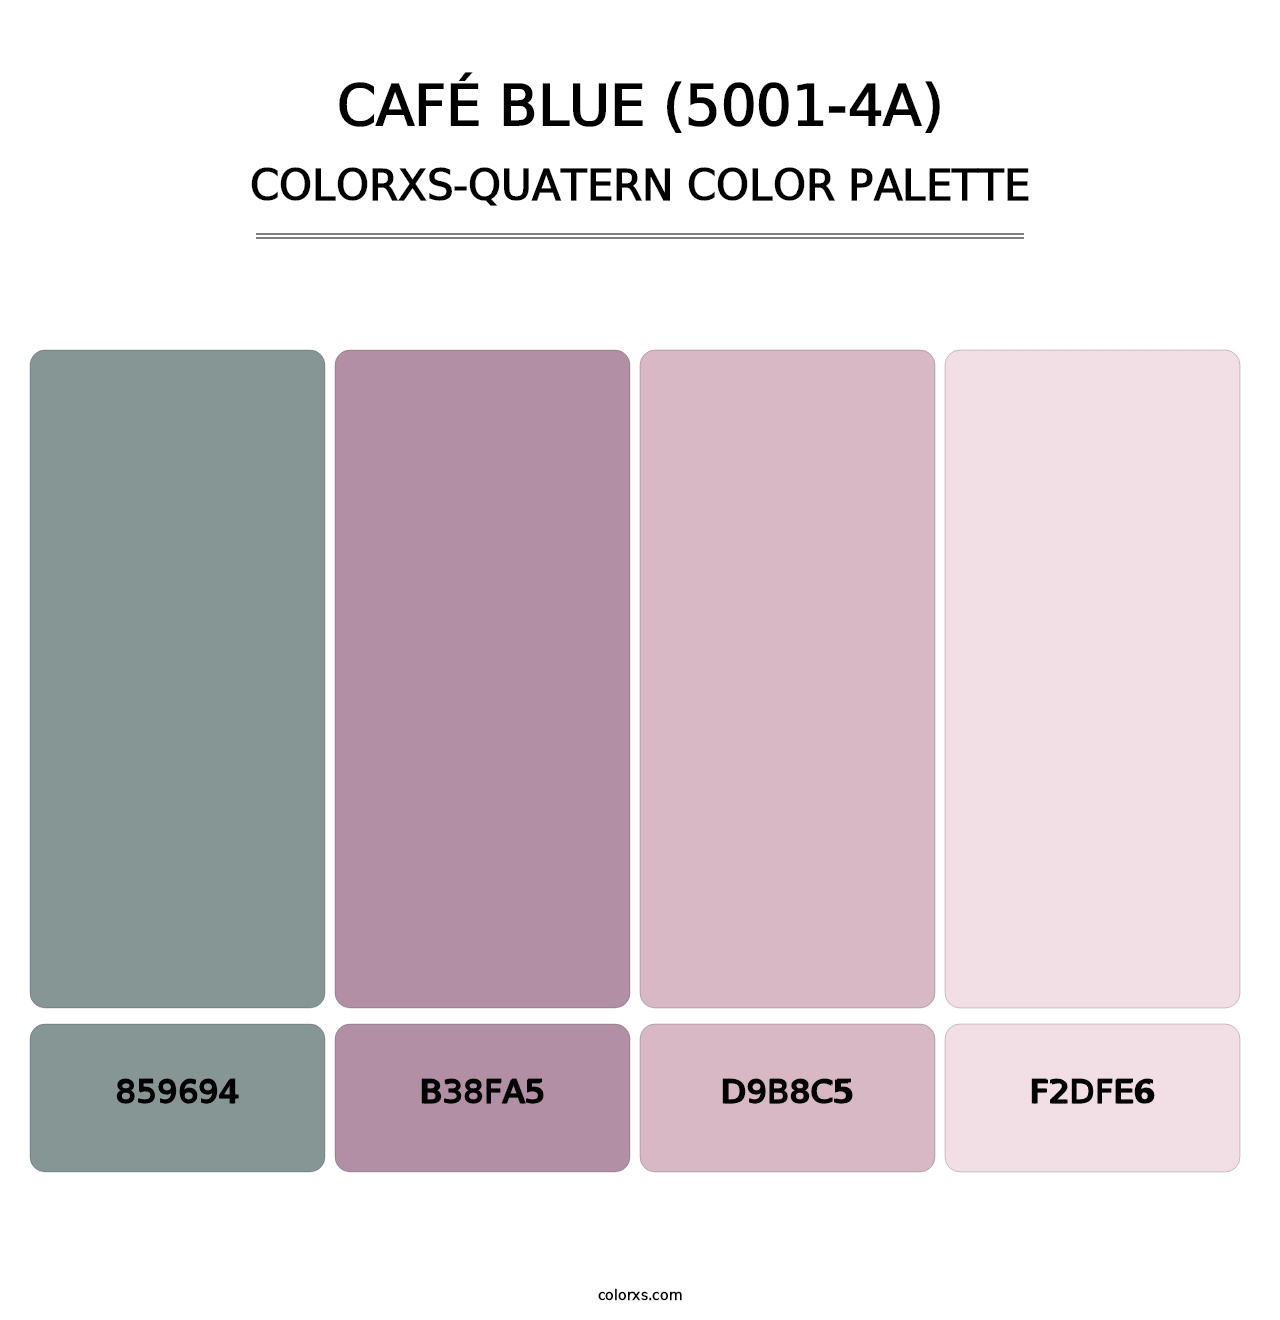 Café Blue (5001-4A) - Colorxs Quatern Palette